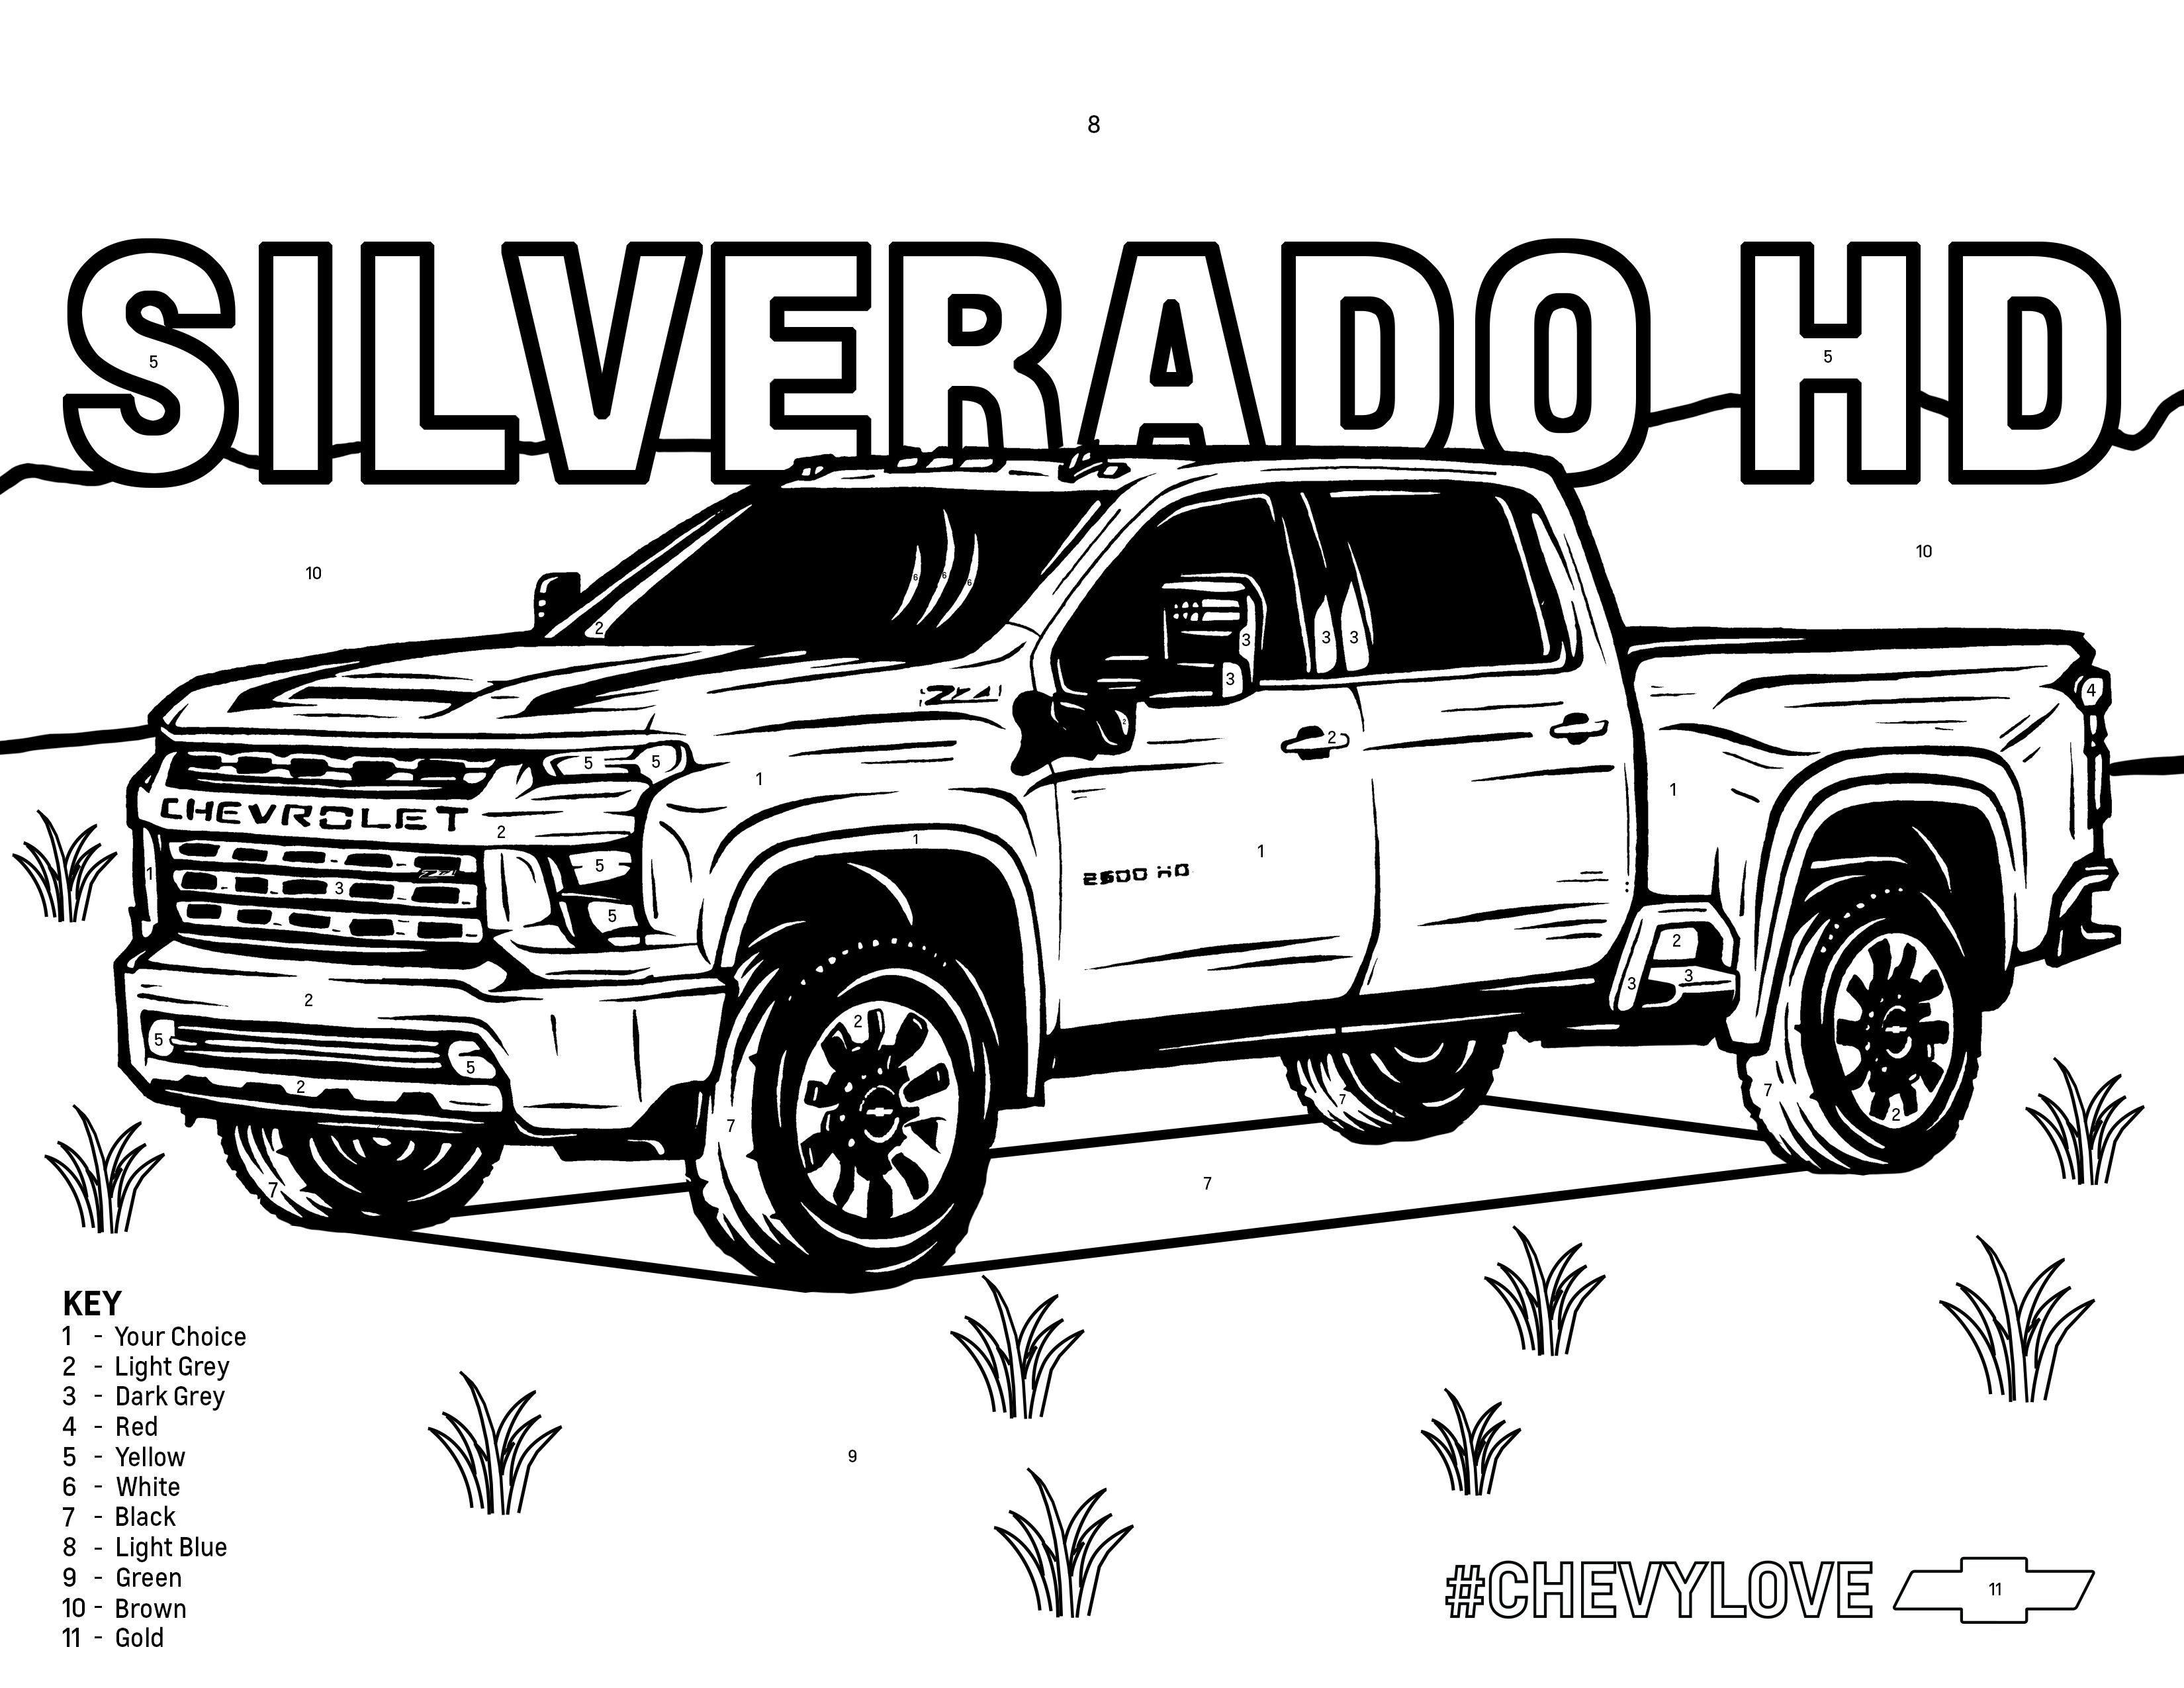 Chevy silverado hd silverado hd truck coloring pages chevy silverado hd